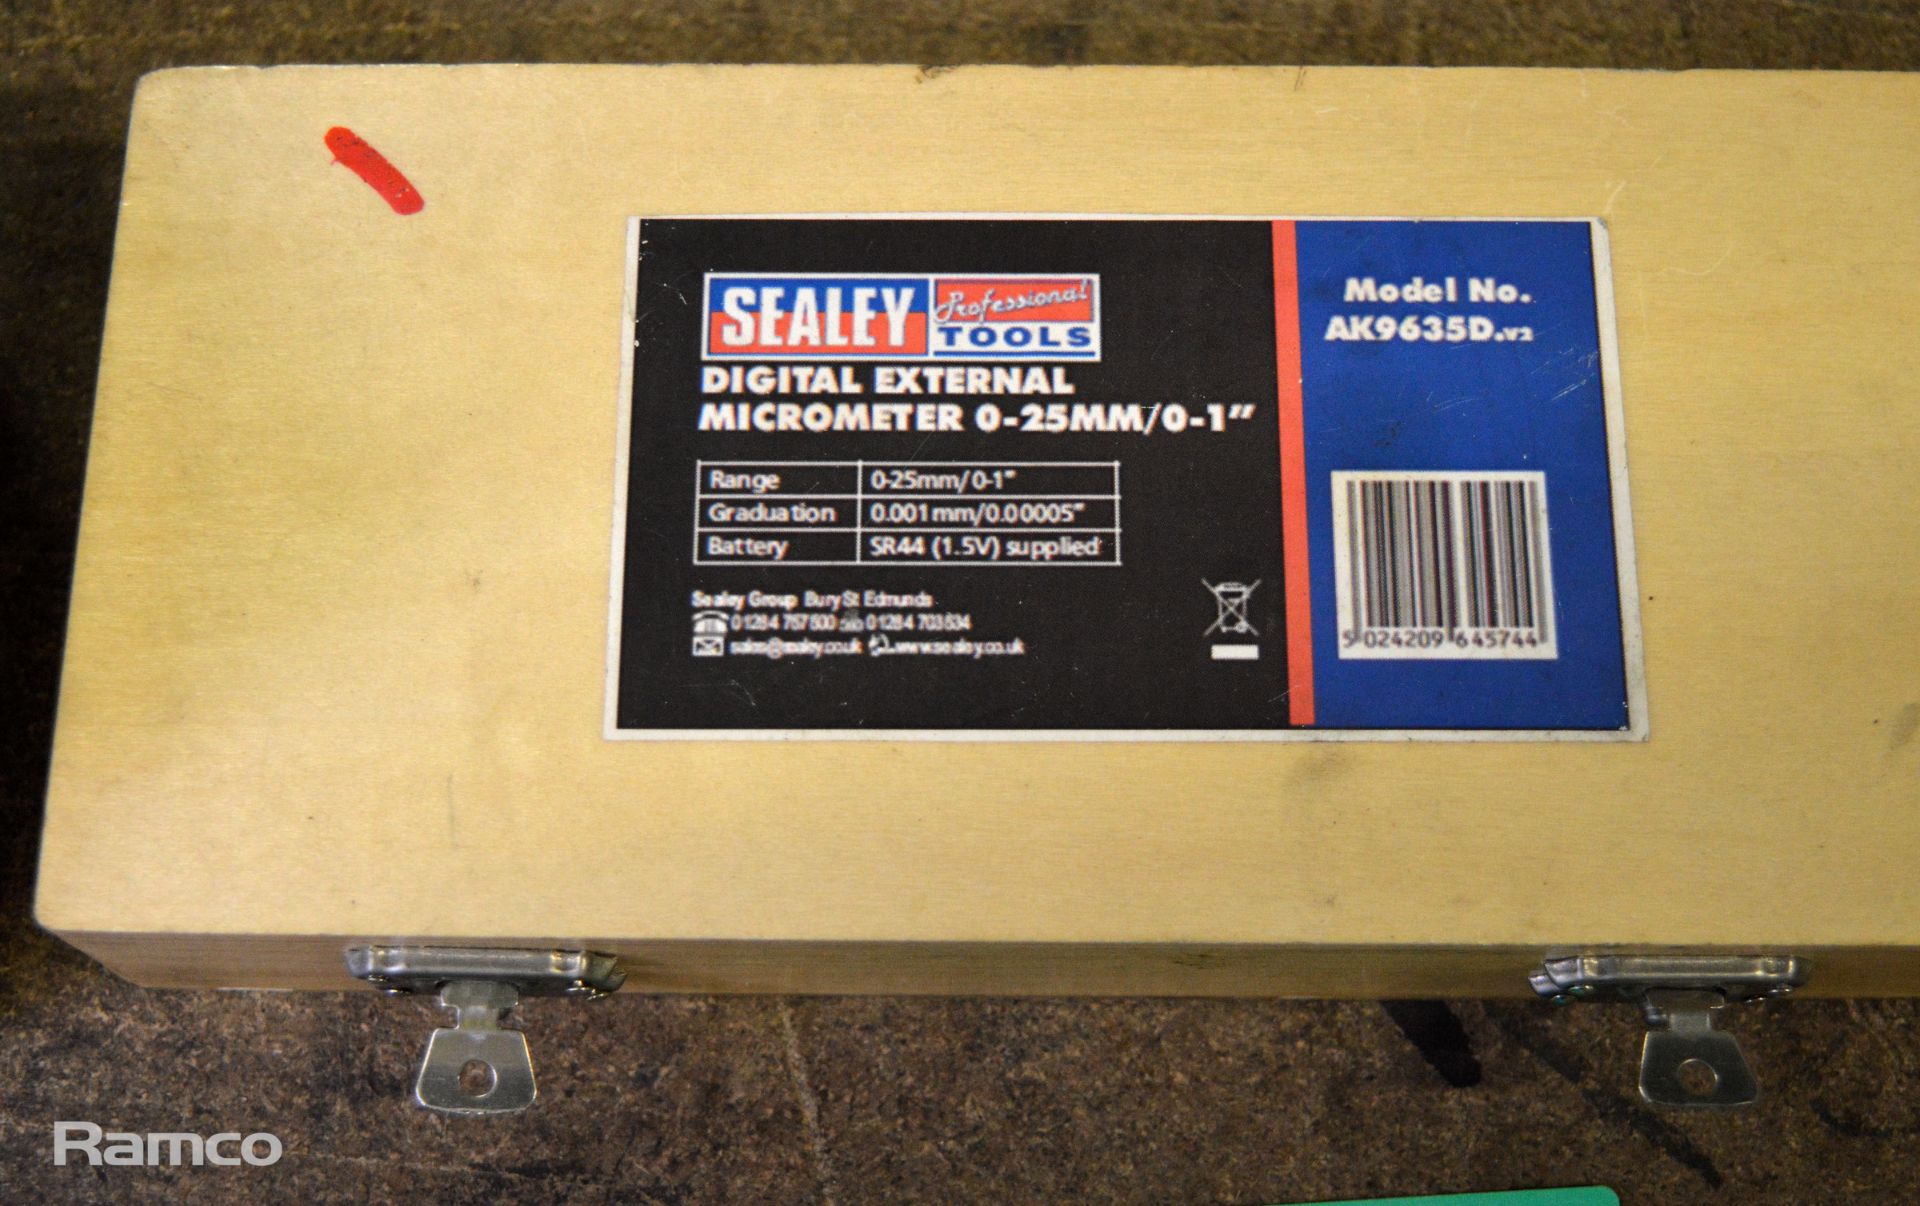 Sealey Digital External Micrometer 0-25mm - Image 2 of 2